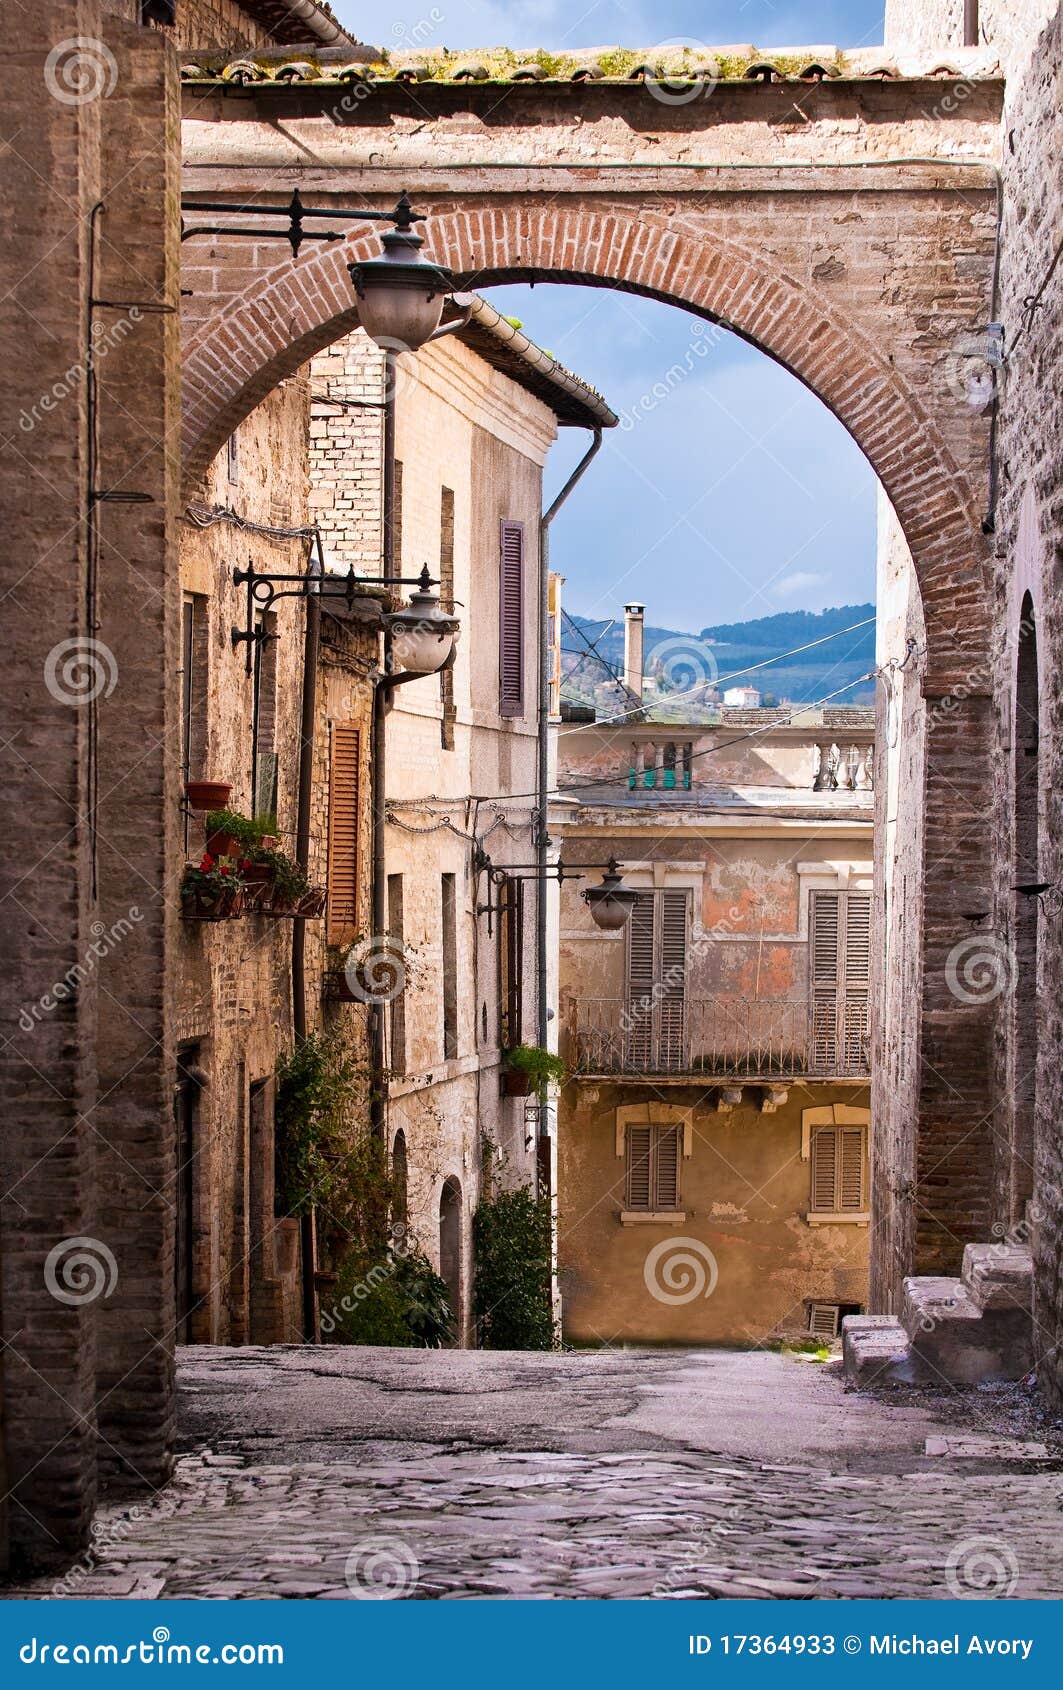 阿罗内镇的村落，意大利翁布里亚大区 (© Maurizio Rellini/eStock Photo)